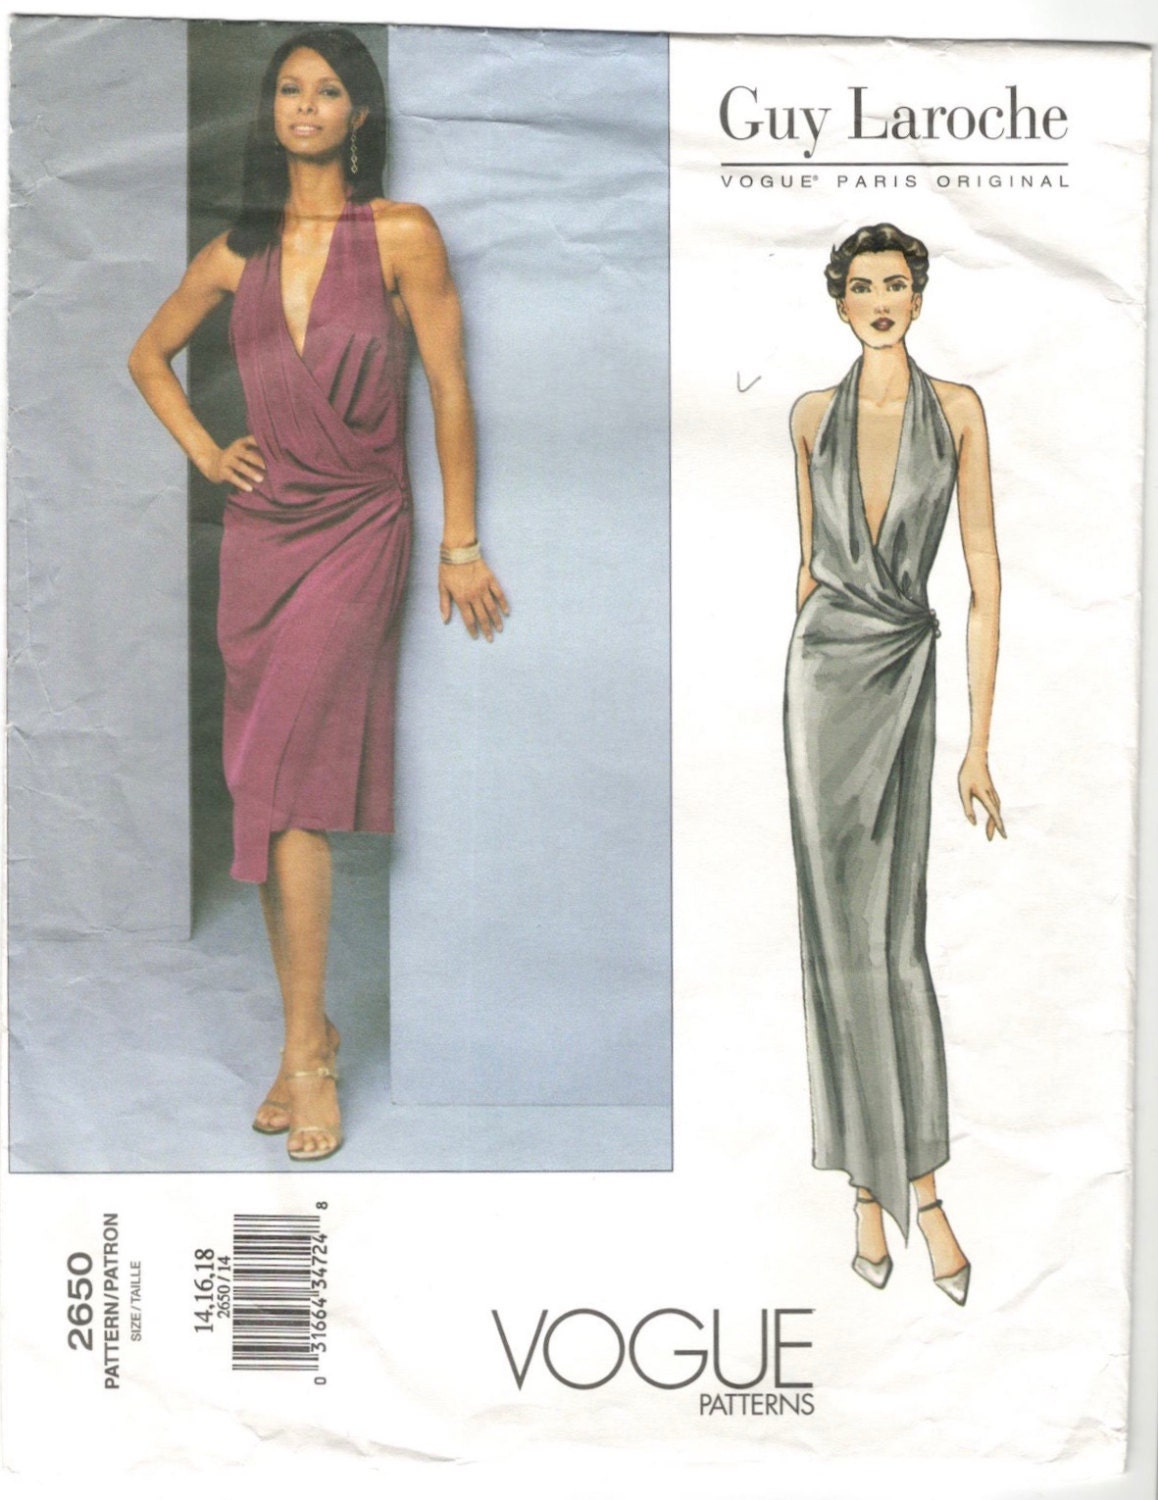 Vogue Pattern 2668 Guy Laroche Pantsuit Jacket and Pants Misses size 14 16  18